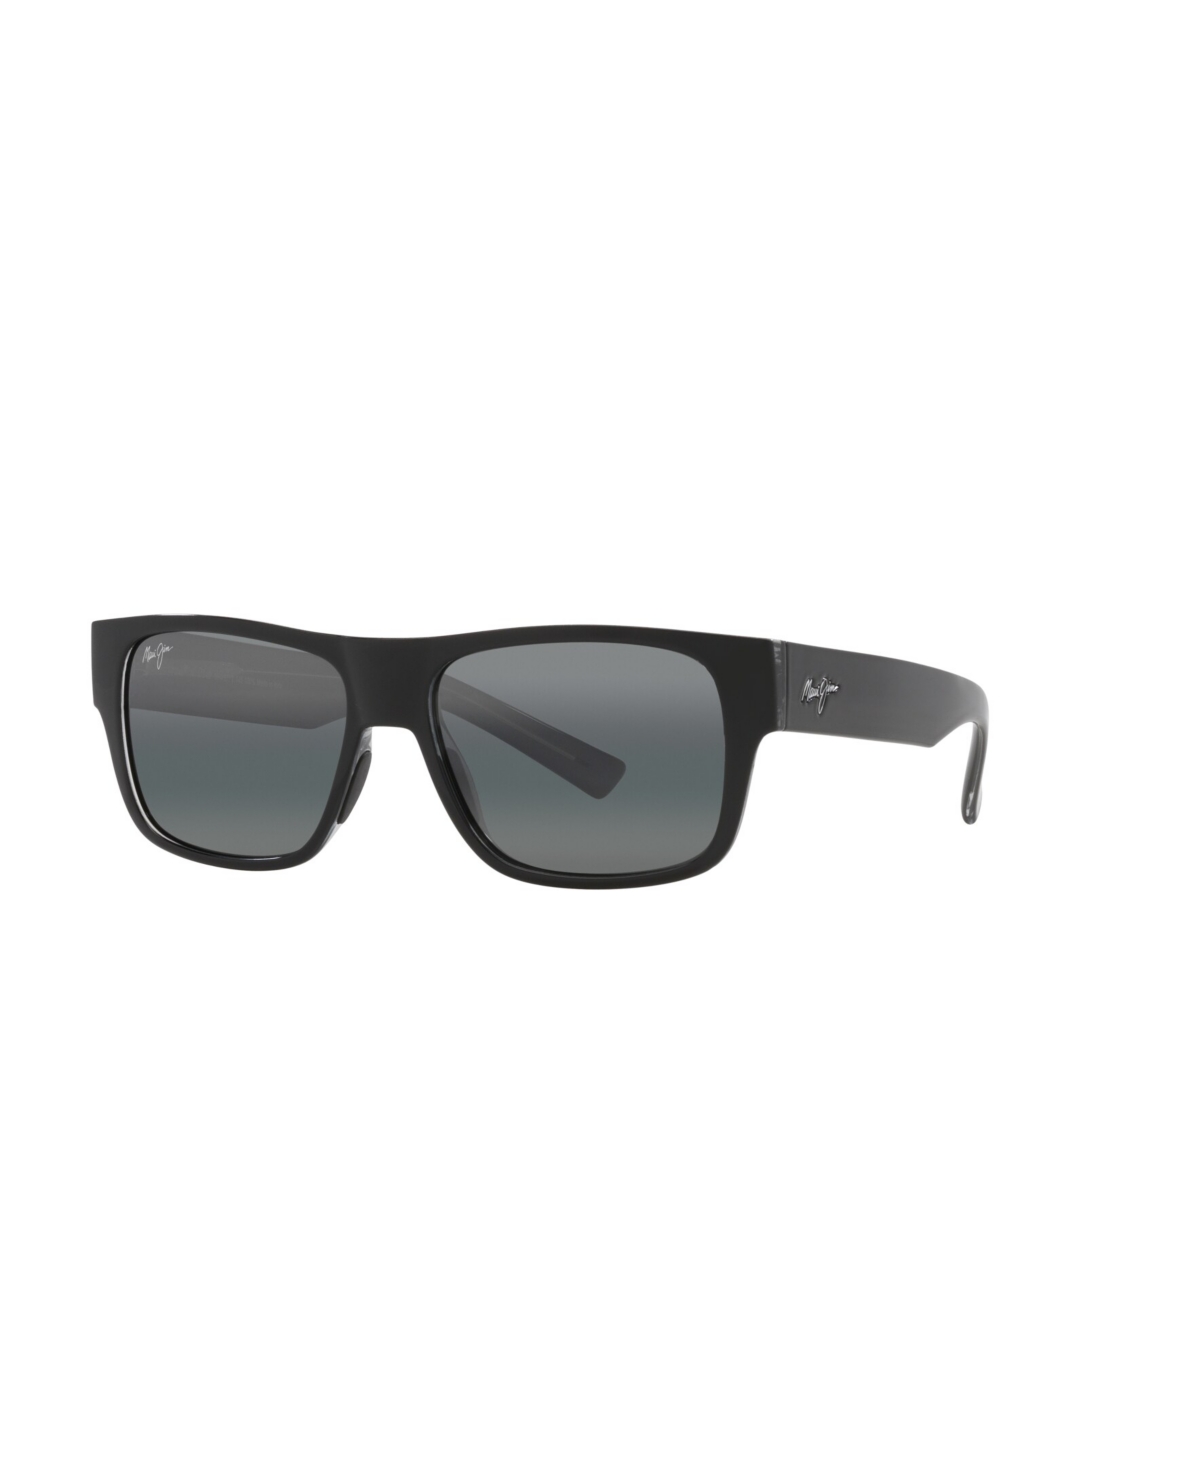 Men's and Women's Polarized Sunglasses, Keahi - Black Shiny